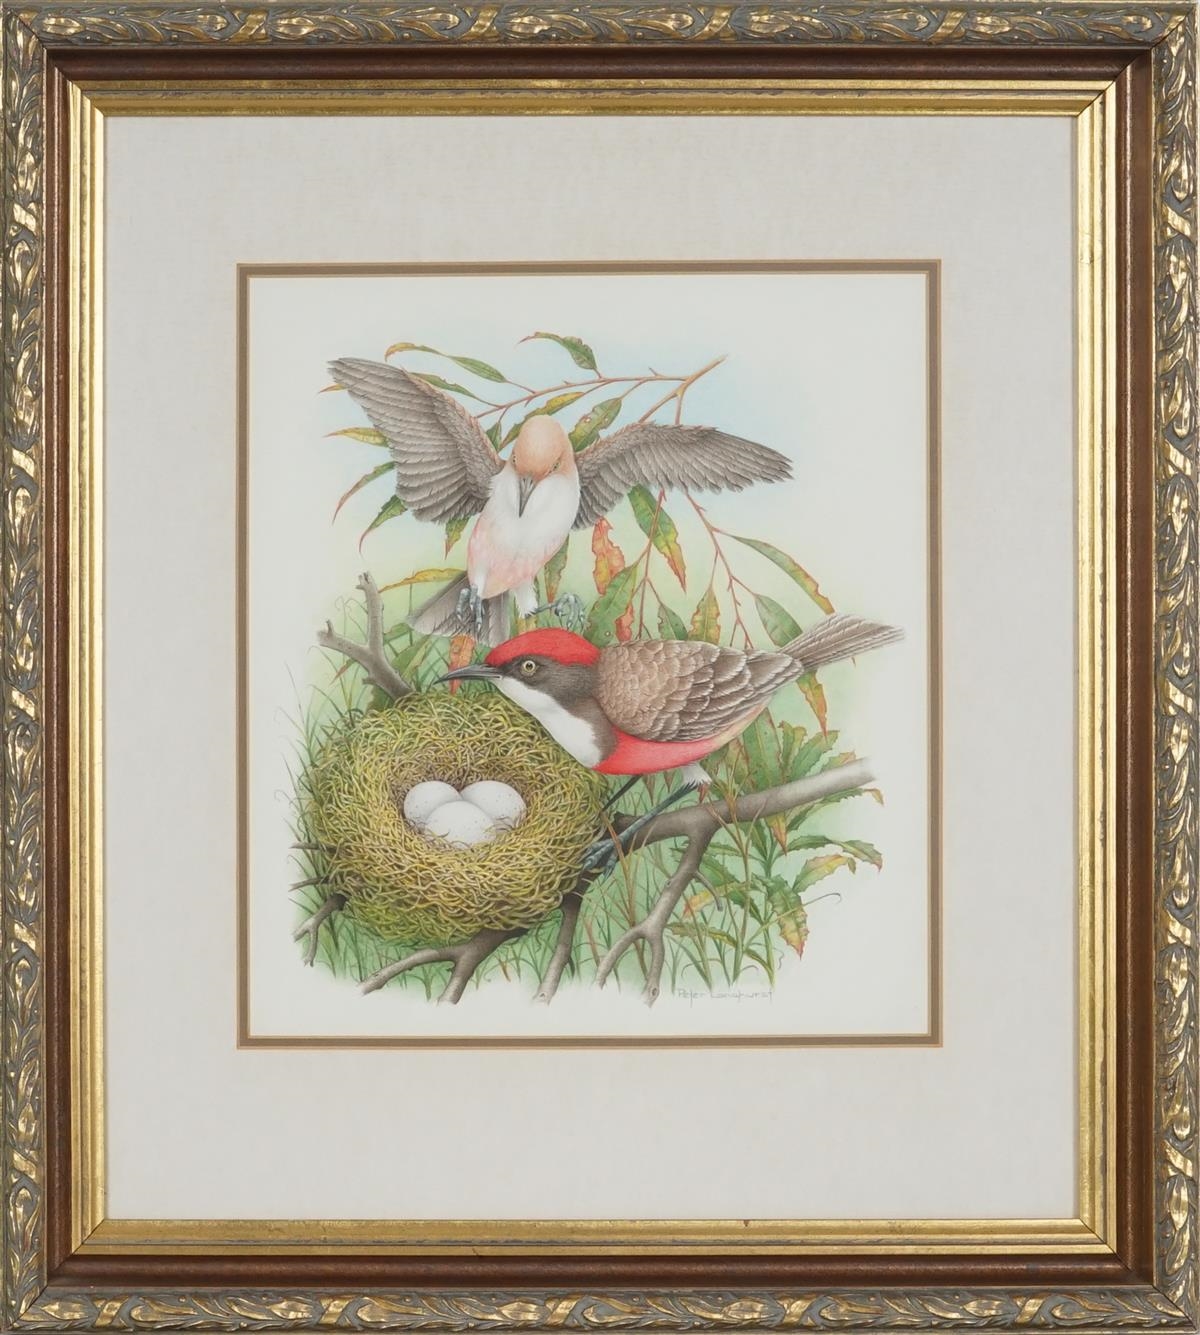 Artwork by Peter Longhurst, Crimson Char & Nest (Ephthianura Tricolor), Made of watercolour